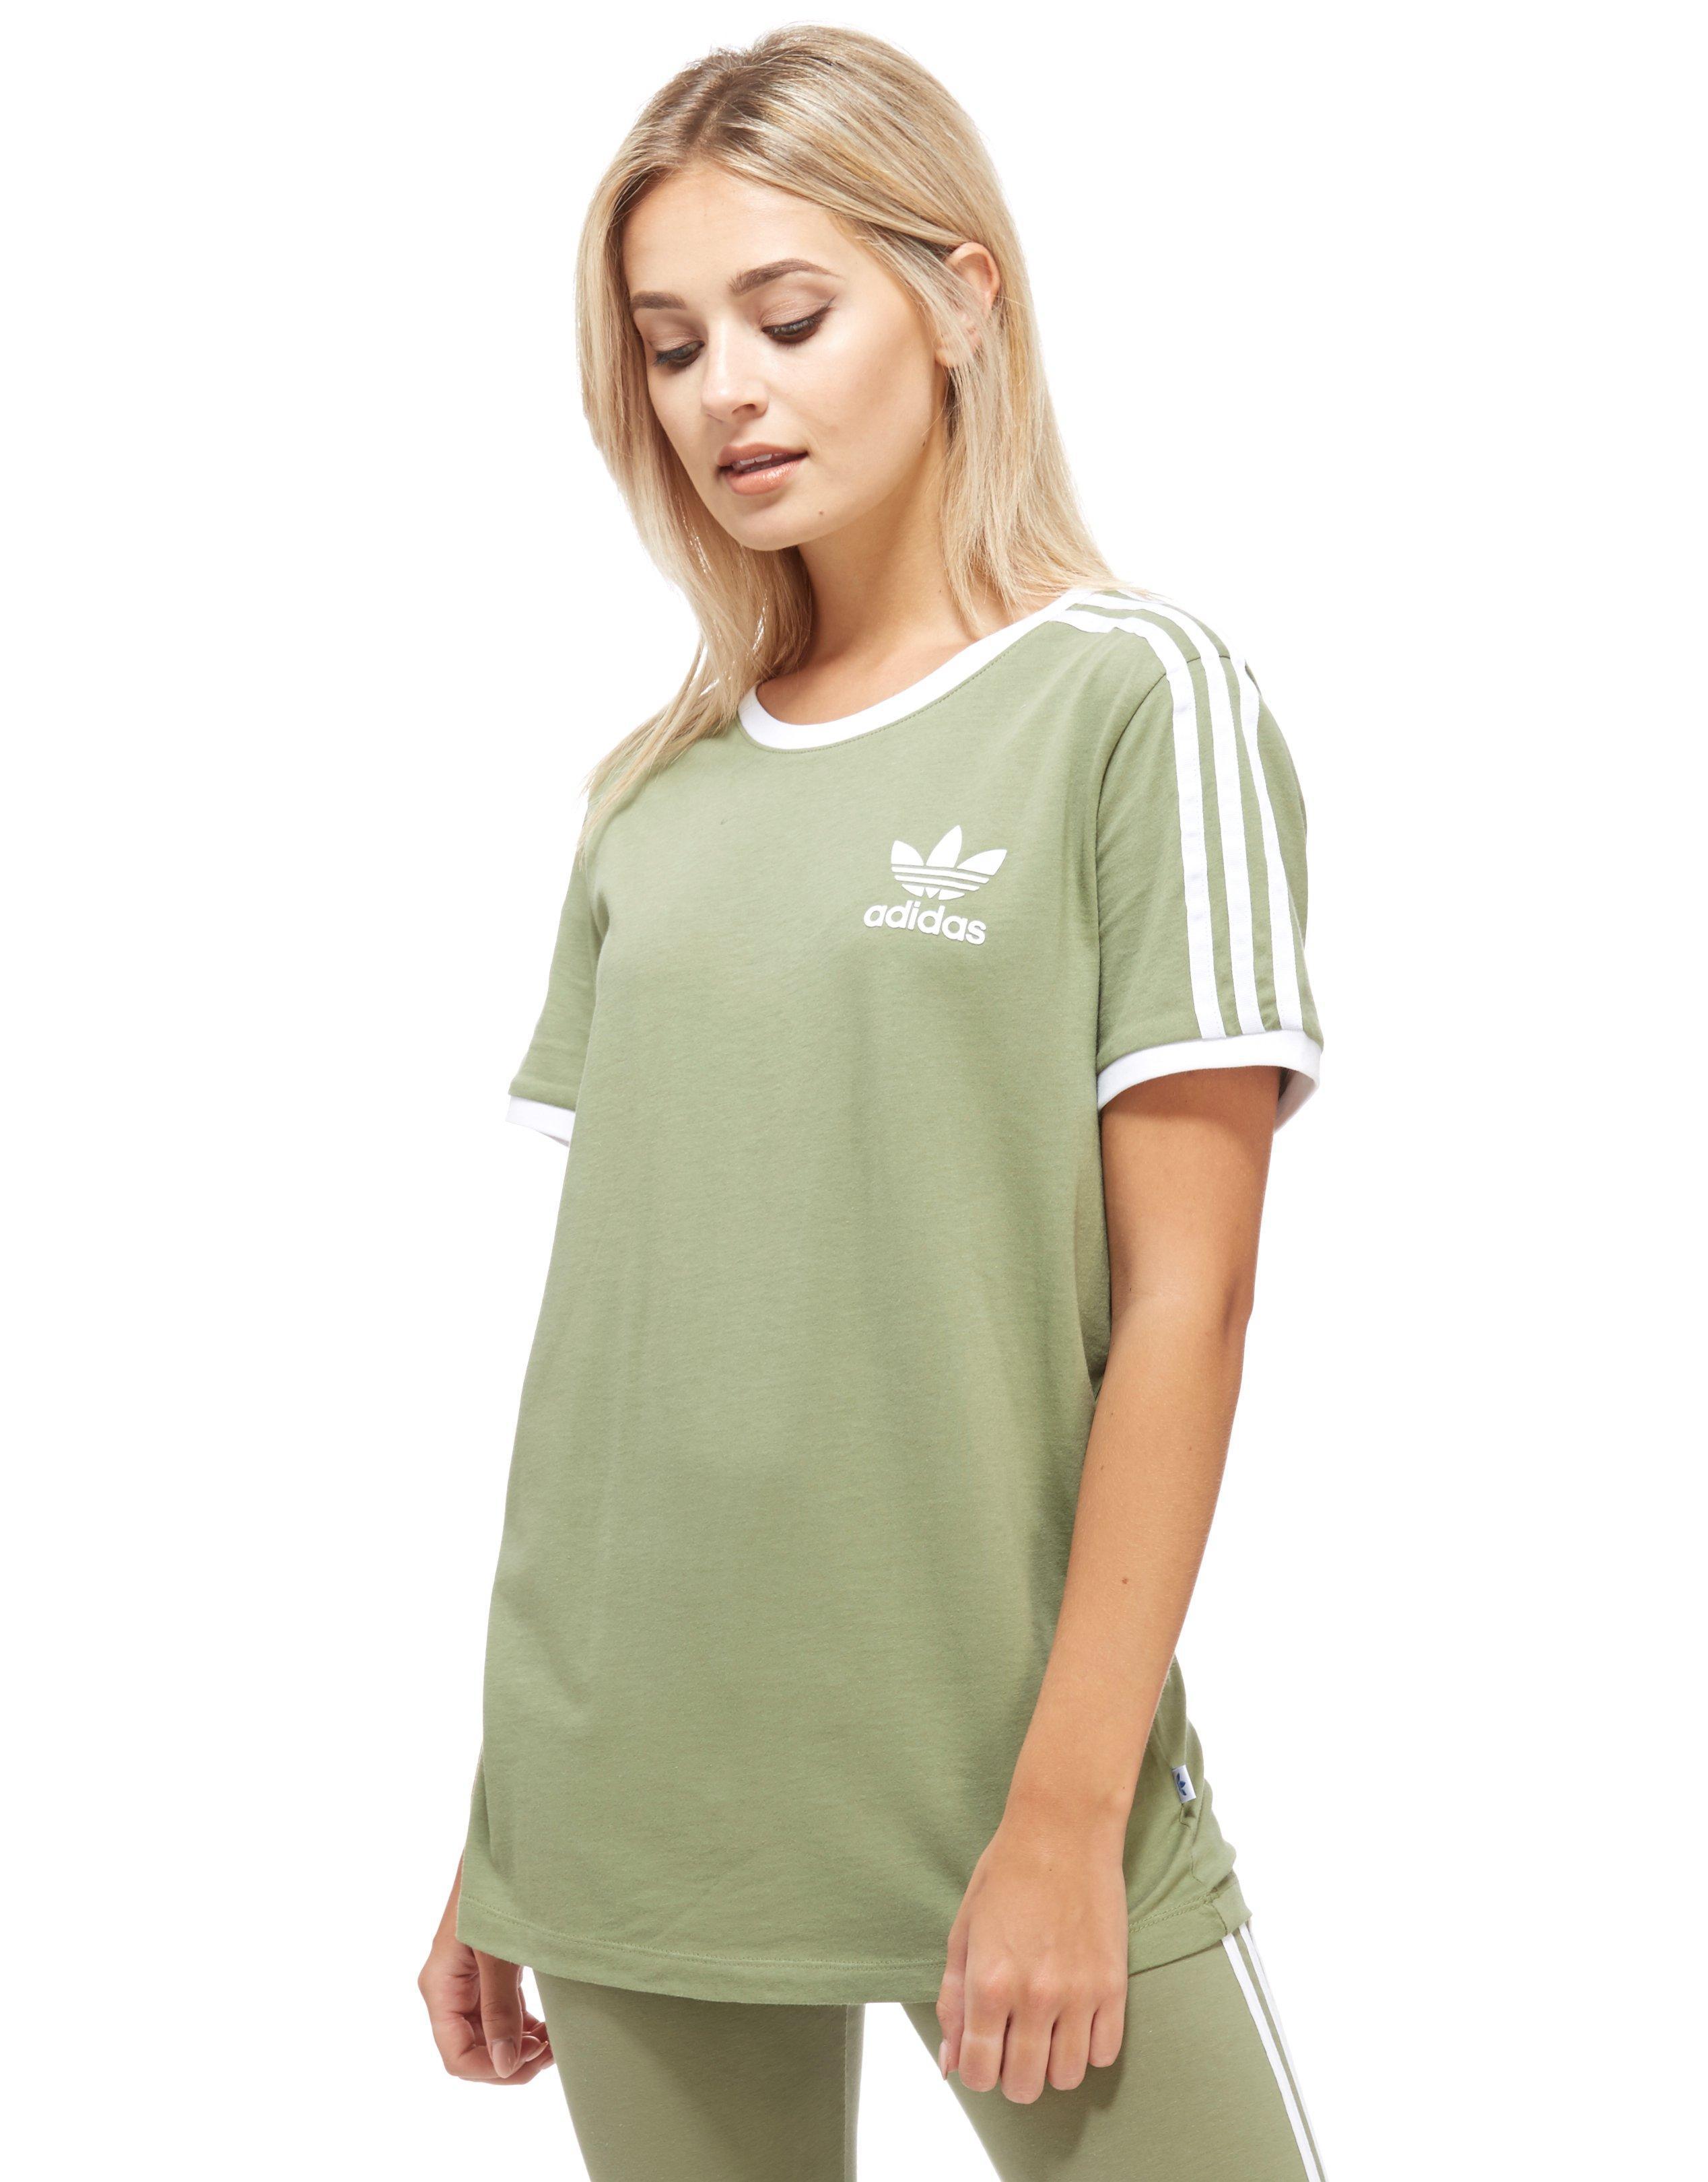 Shopping > light green adidas shirt